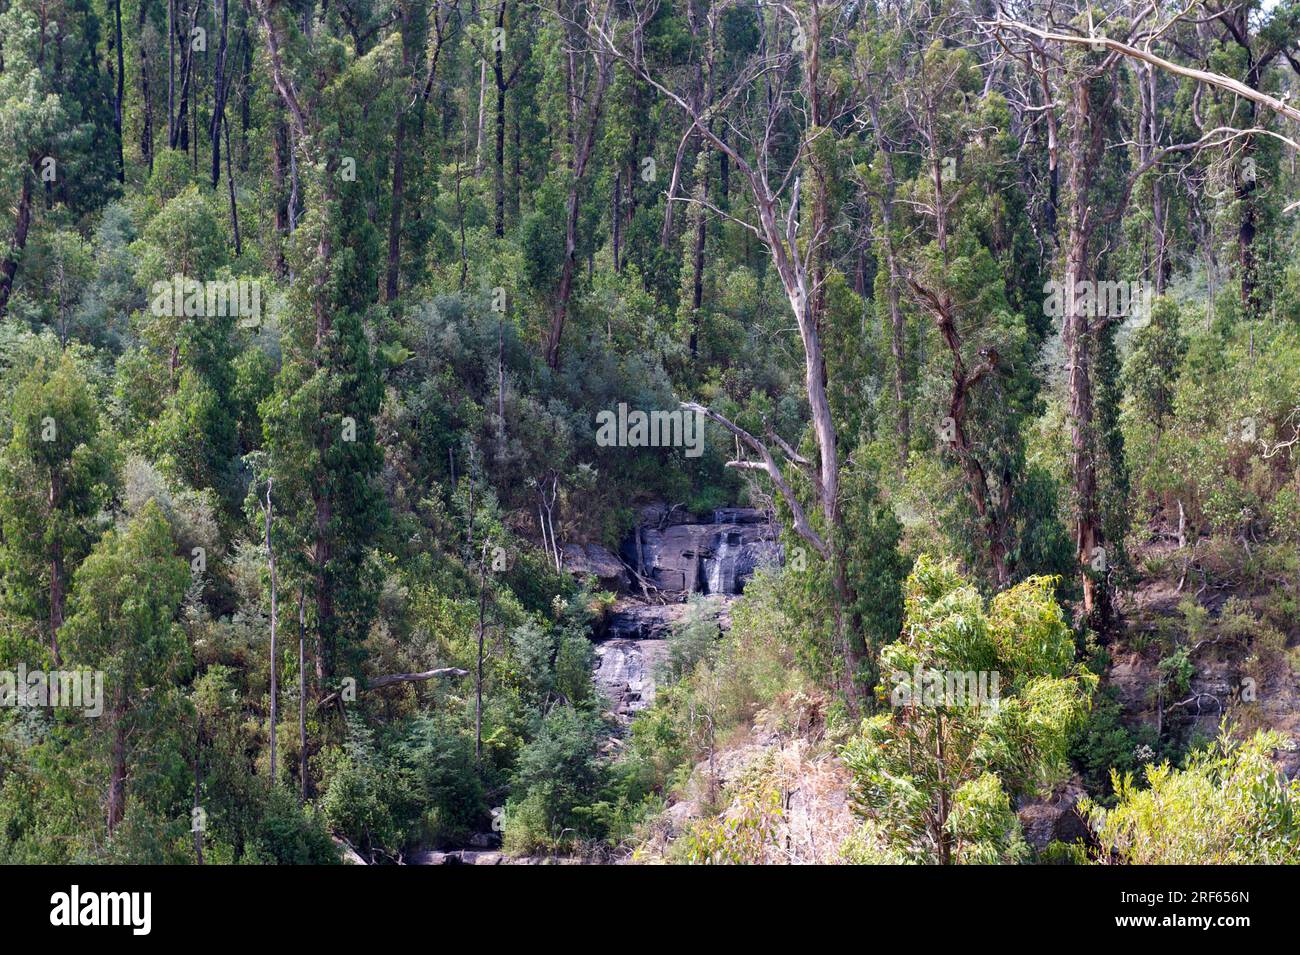 Nach den Bränden von 2009 haben sich im Kinglake National Park in Victoria, Australien, viele Ausblicke eröffnet. Dieser felsige Bach war früher in den Bäumen versteckt. Stockfoto